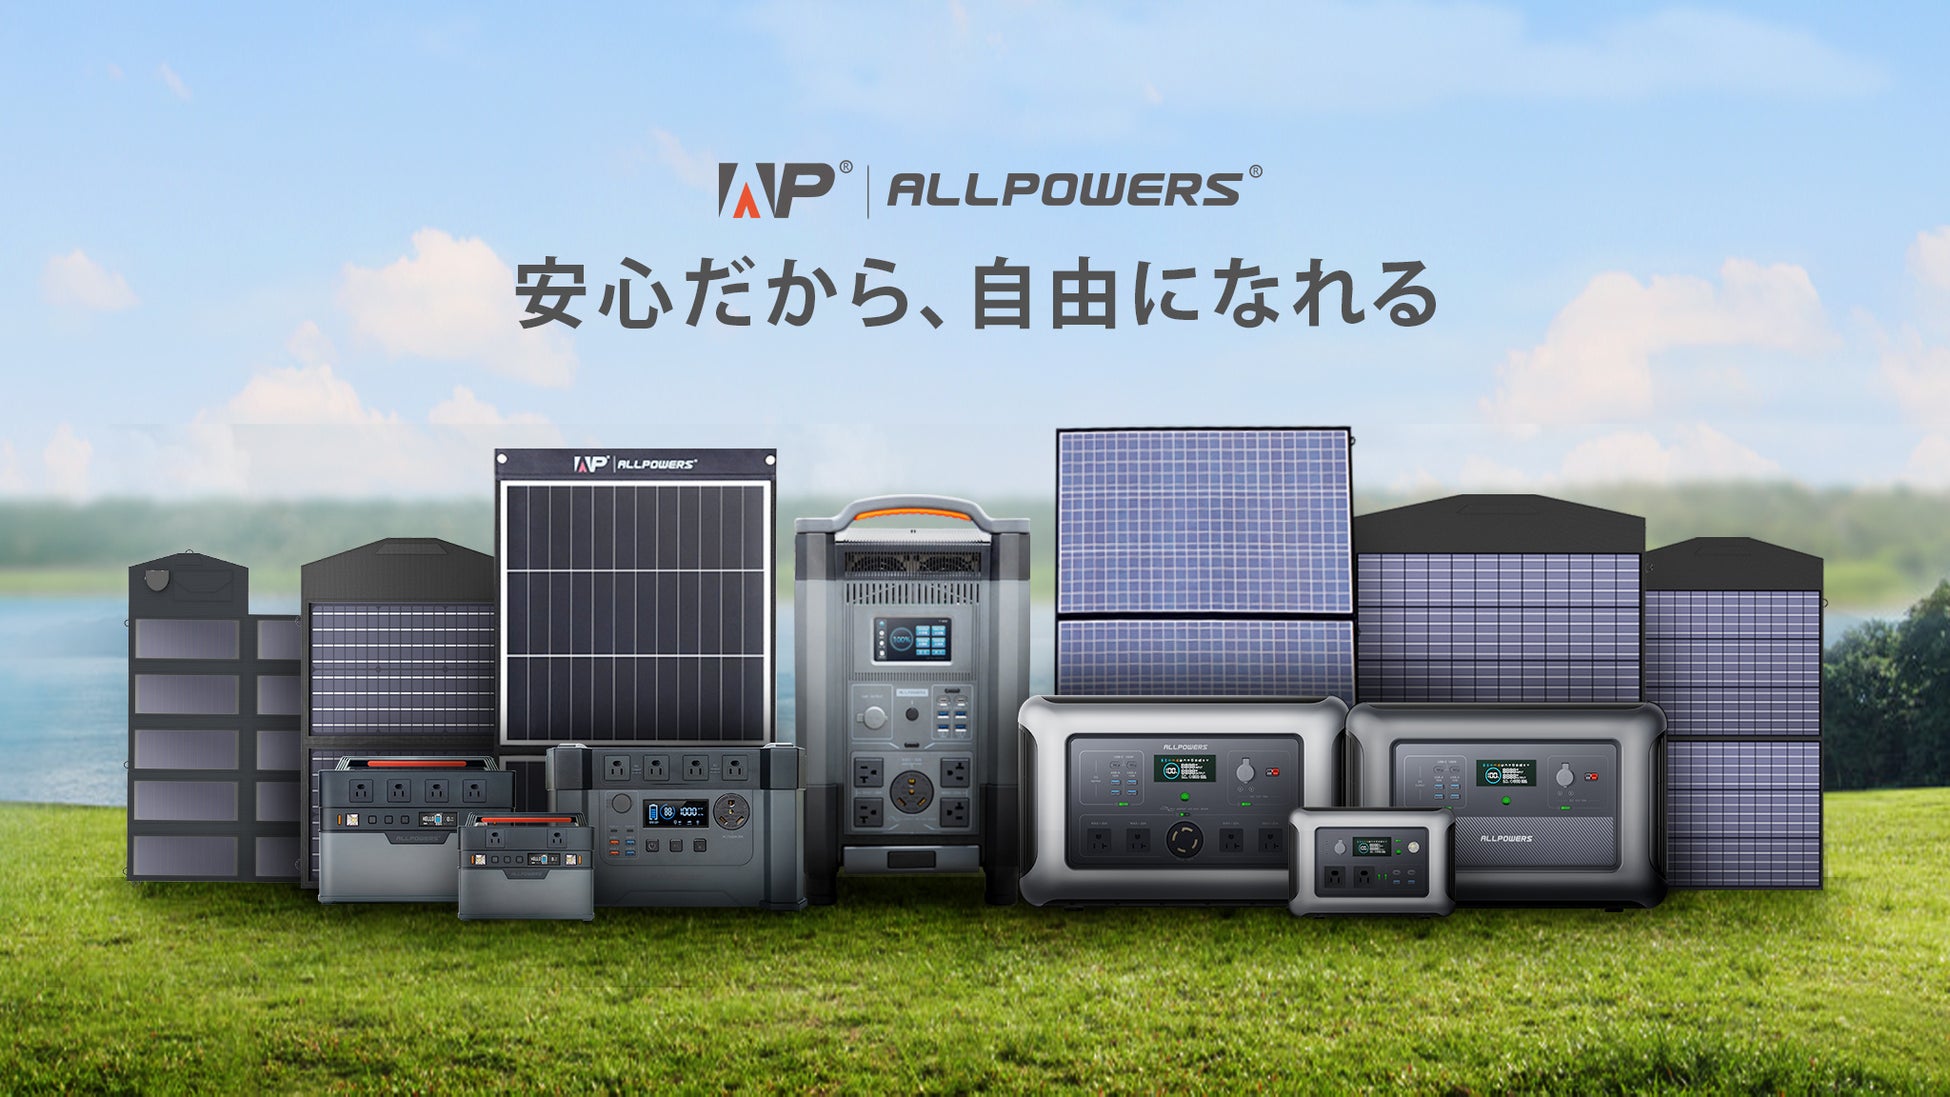 ポータブル電源ブランド「ALLPOWERS」 が「アウトドアデイジャパン東京」に出展！3月31日発売の新製品「R600ポータブル電源」を手に取って試せます。のサブ画像9